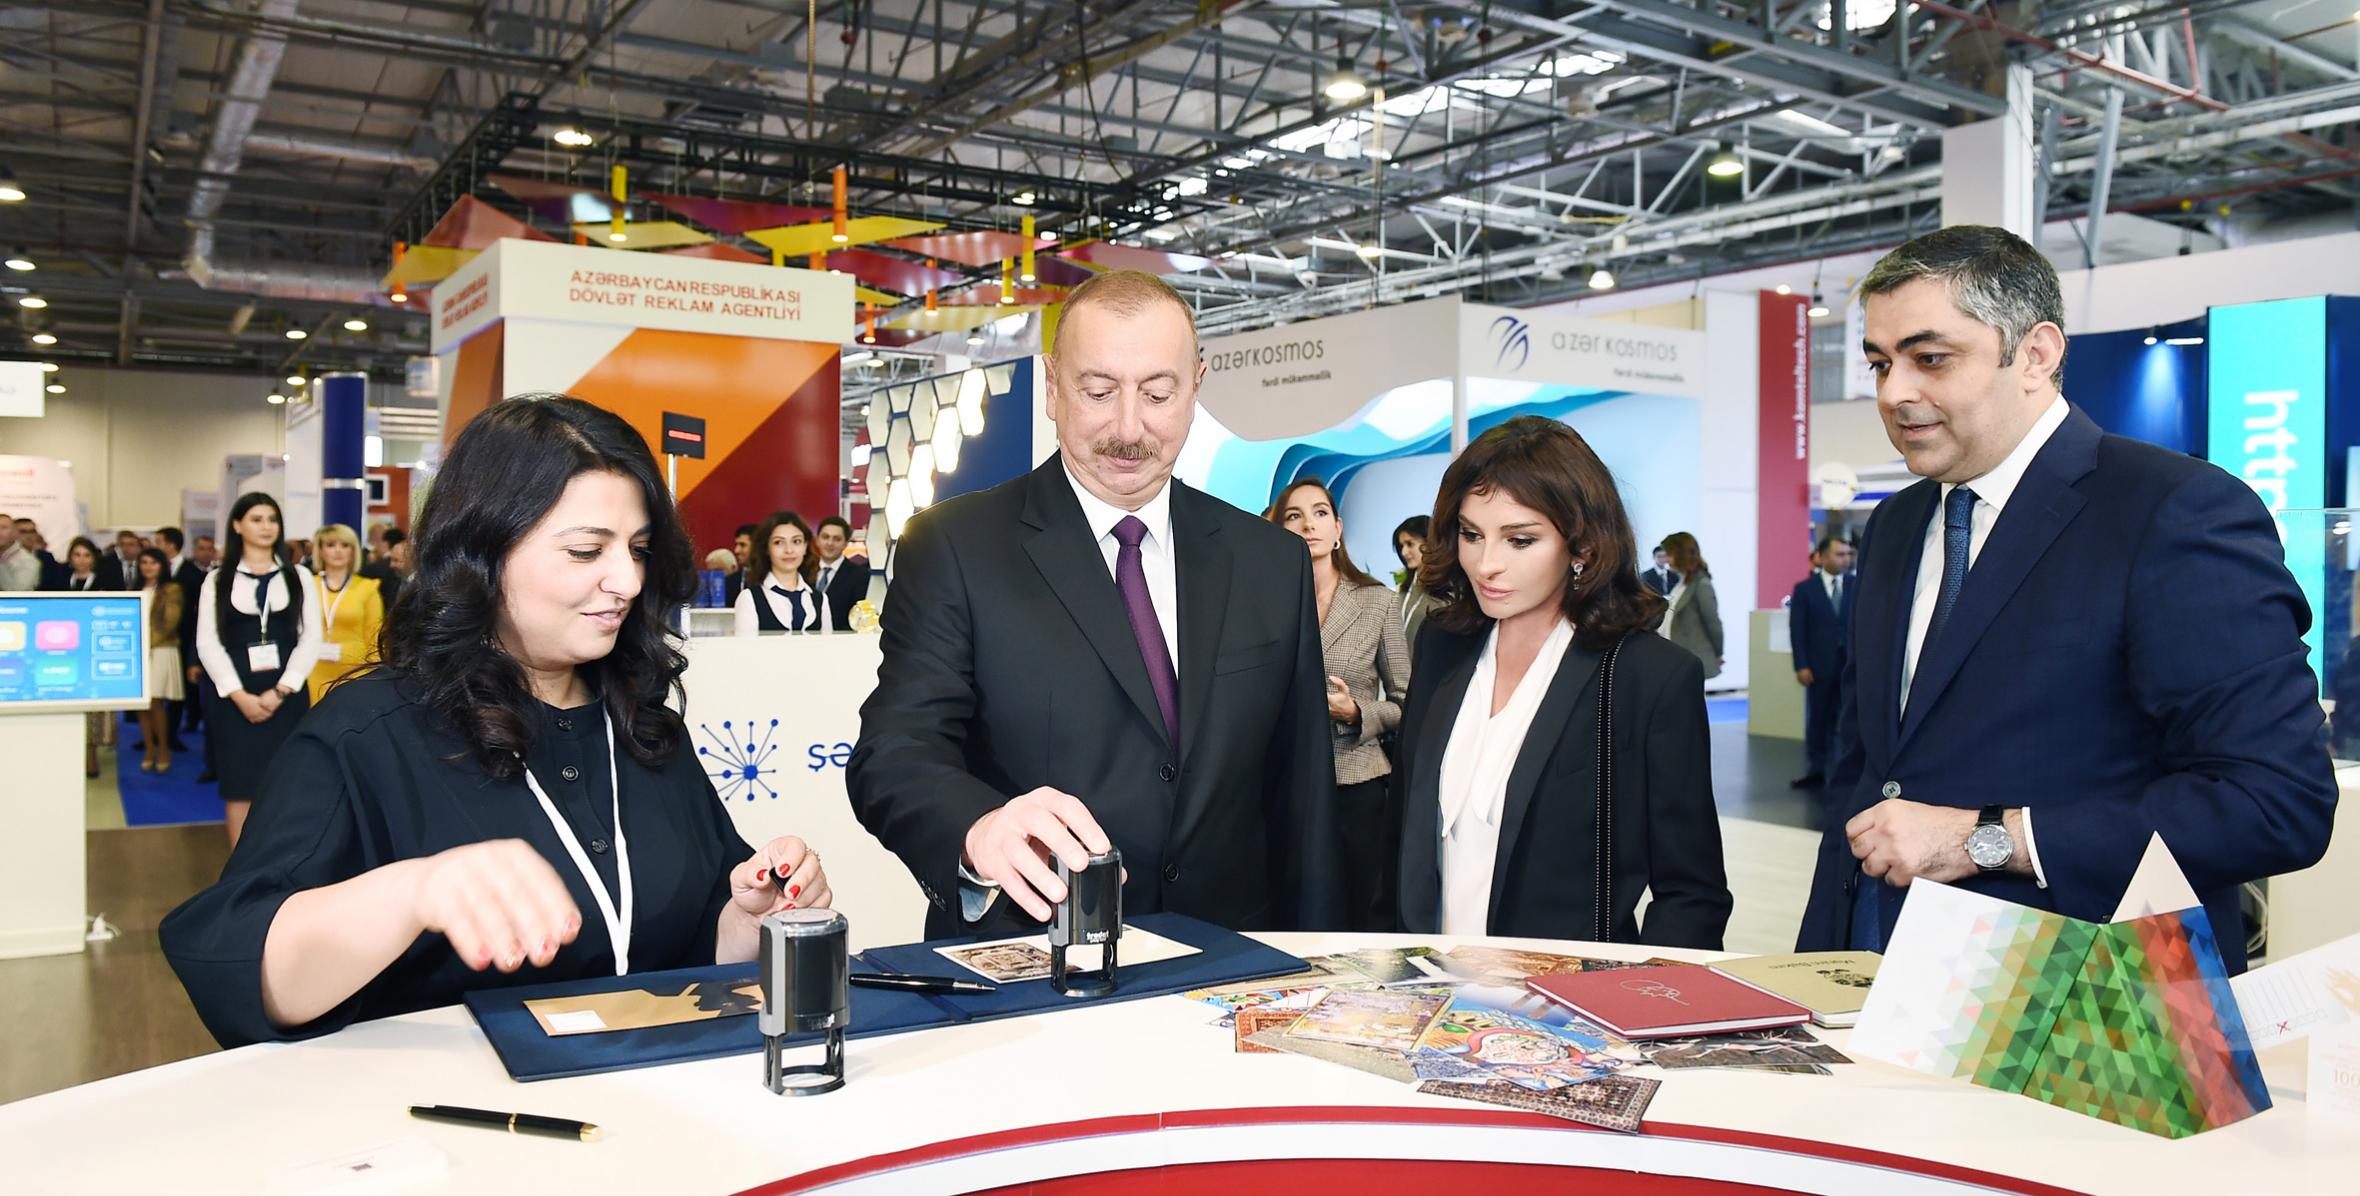 Ilham Aliyev viewed Bakutel 2018 exhibition